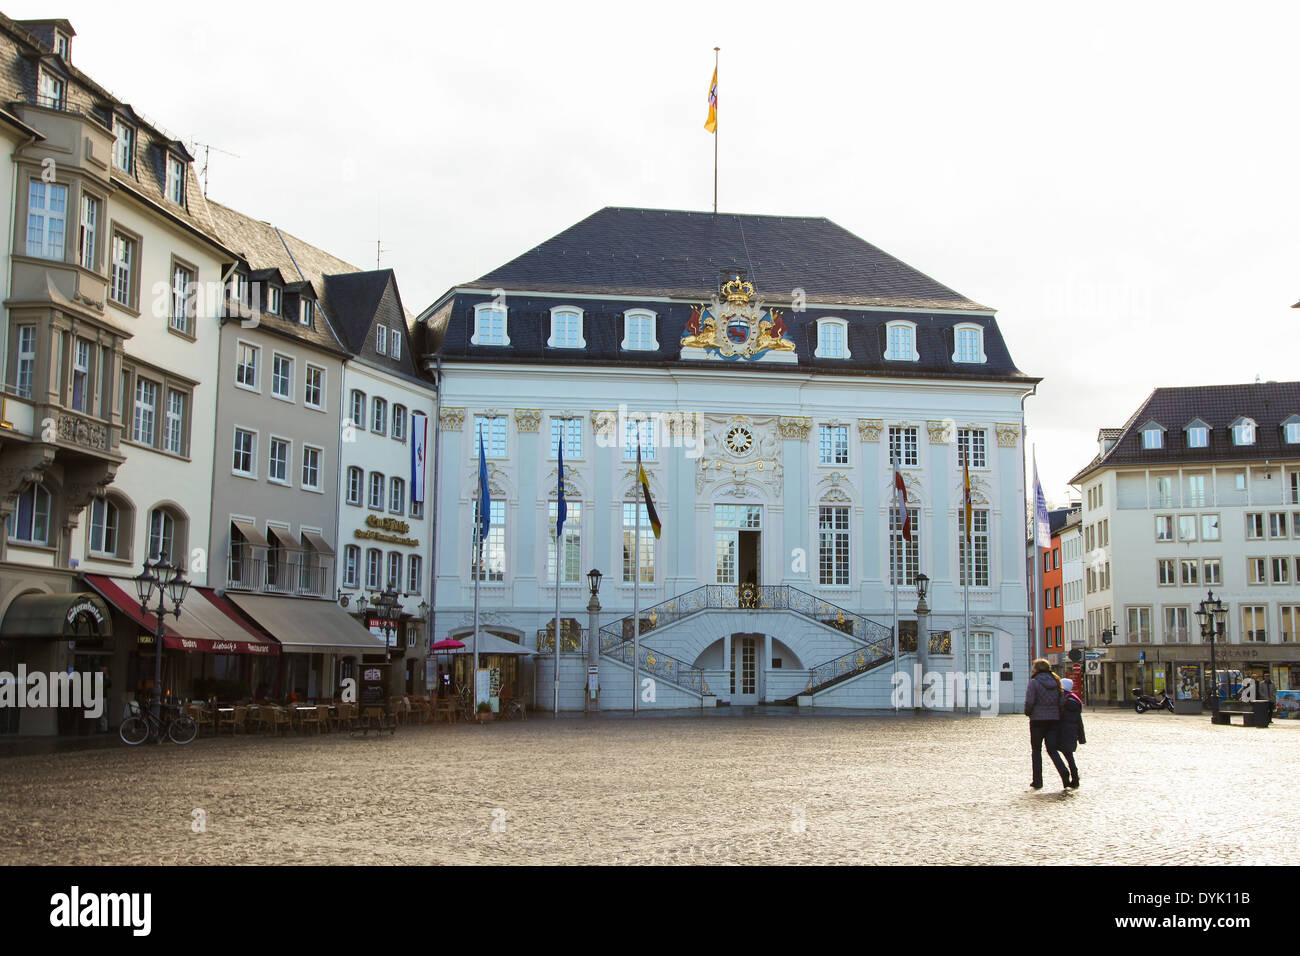 BONN, Deutschland - 16. Februar 2014: Nicht identifizierten Personen vor dem alten Rathaus in Bonn, Nord Rhein Westfalen, Deutschland. Stockfoto